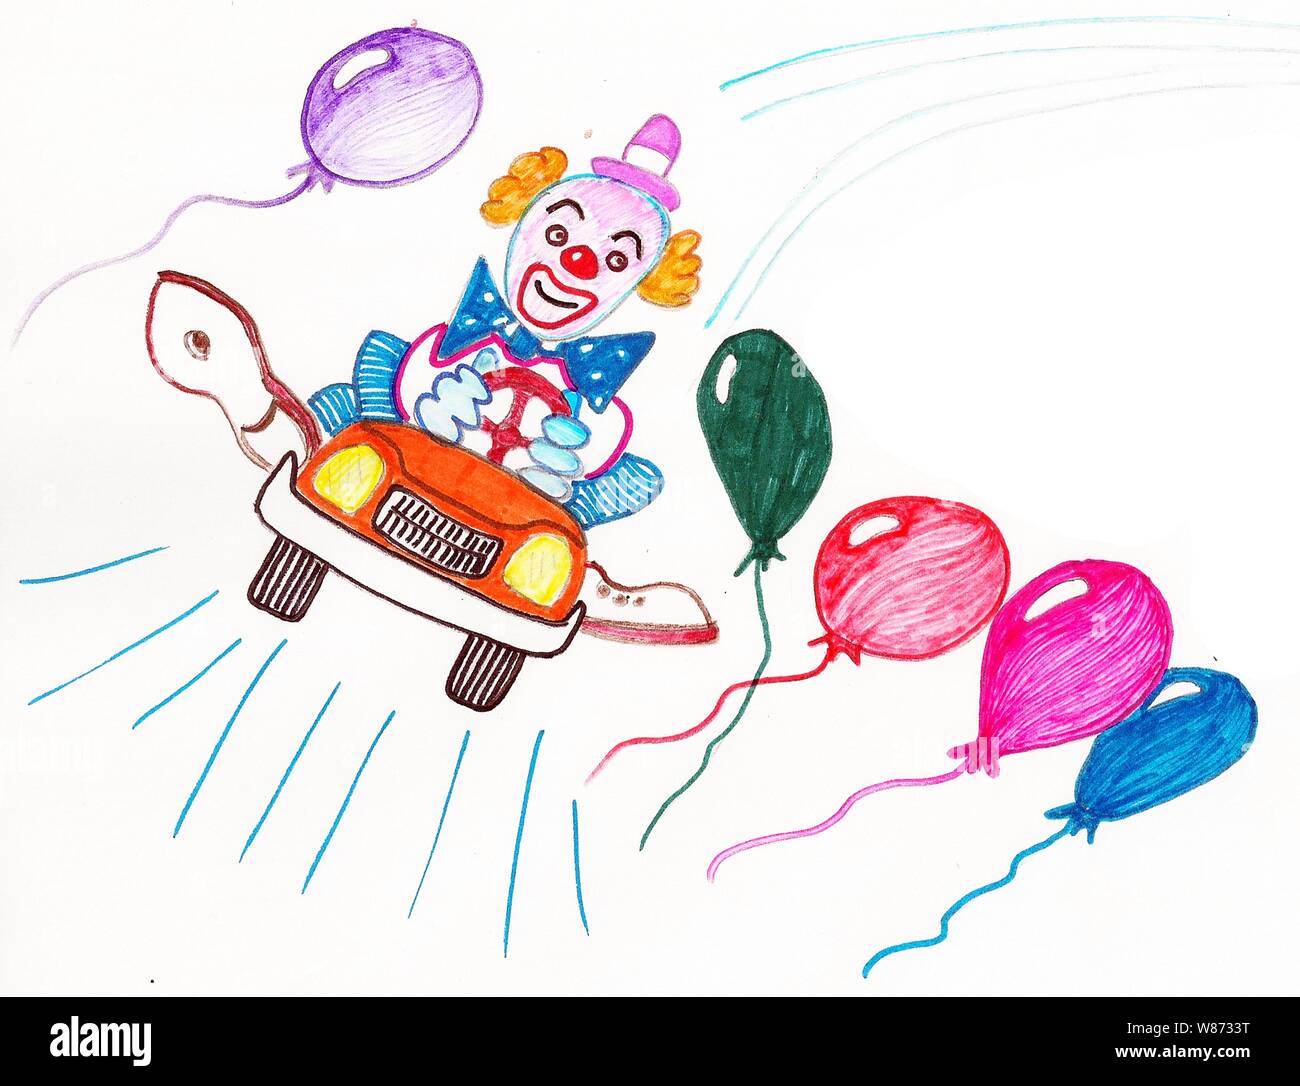 Farbige Markierungen eines Clowns in einem Auto mit farbigen Ballons Stockfoto